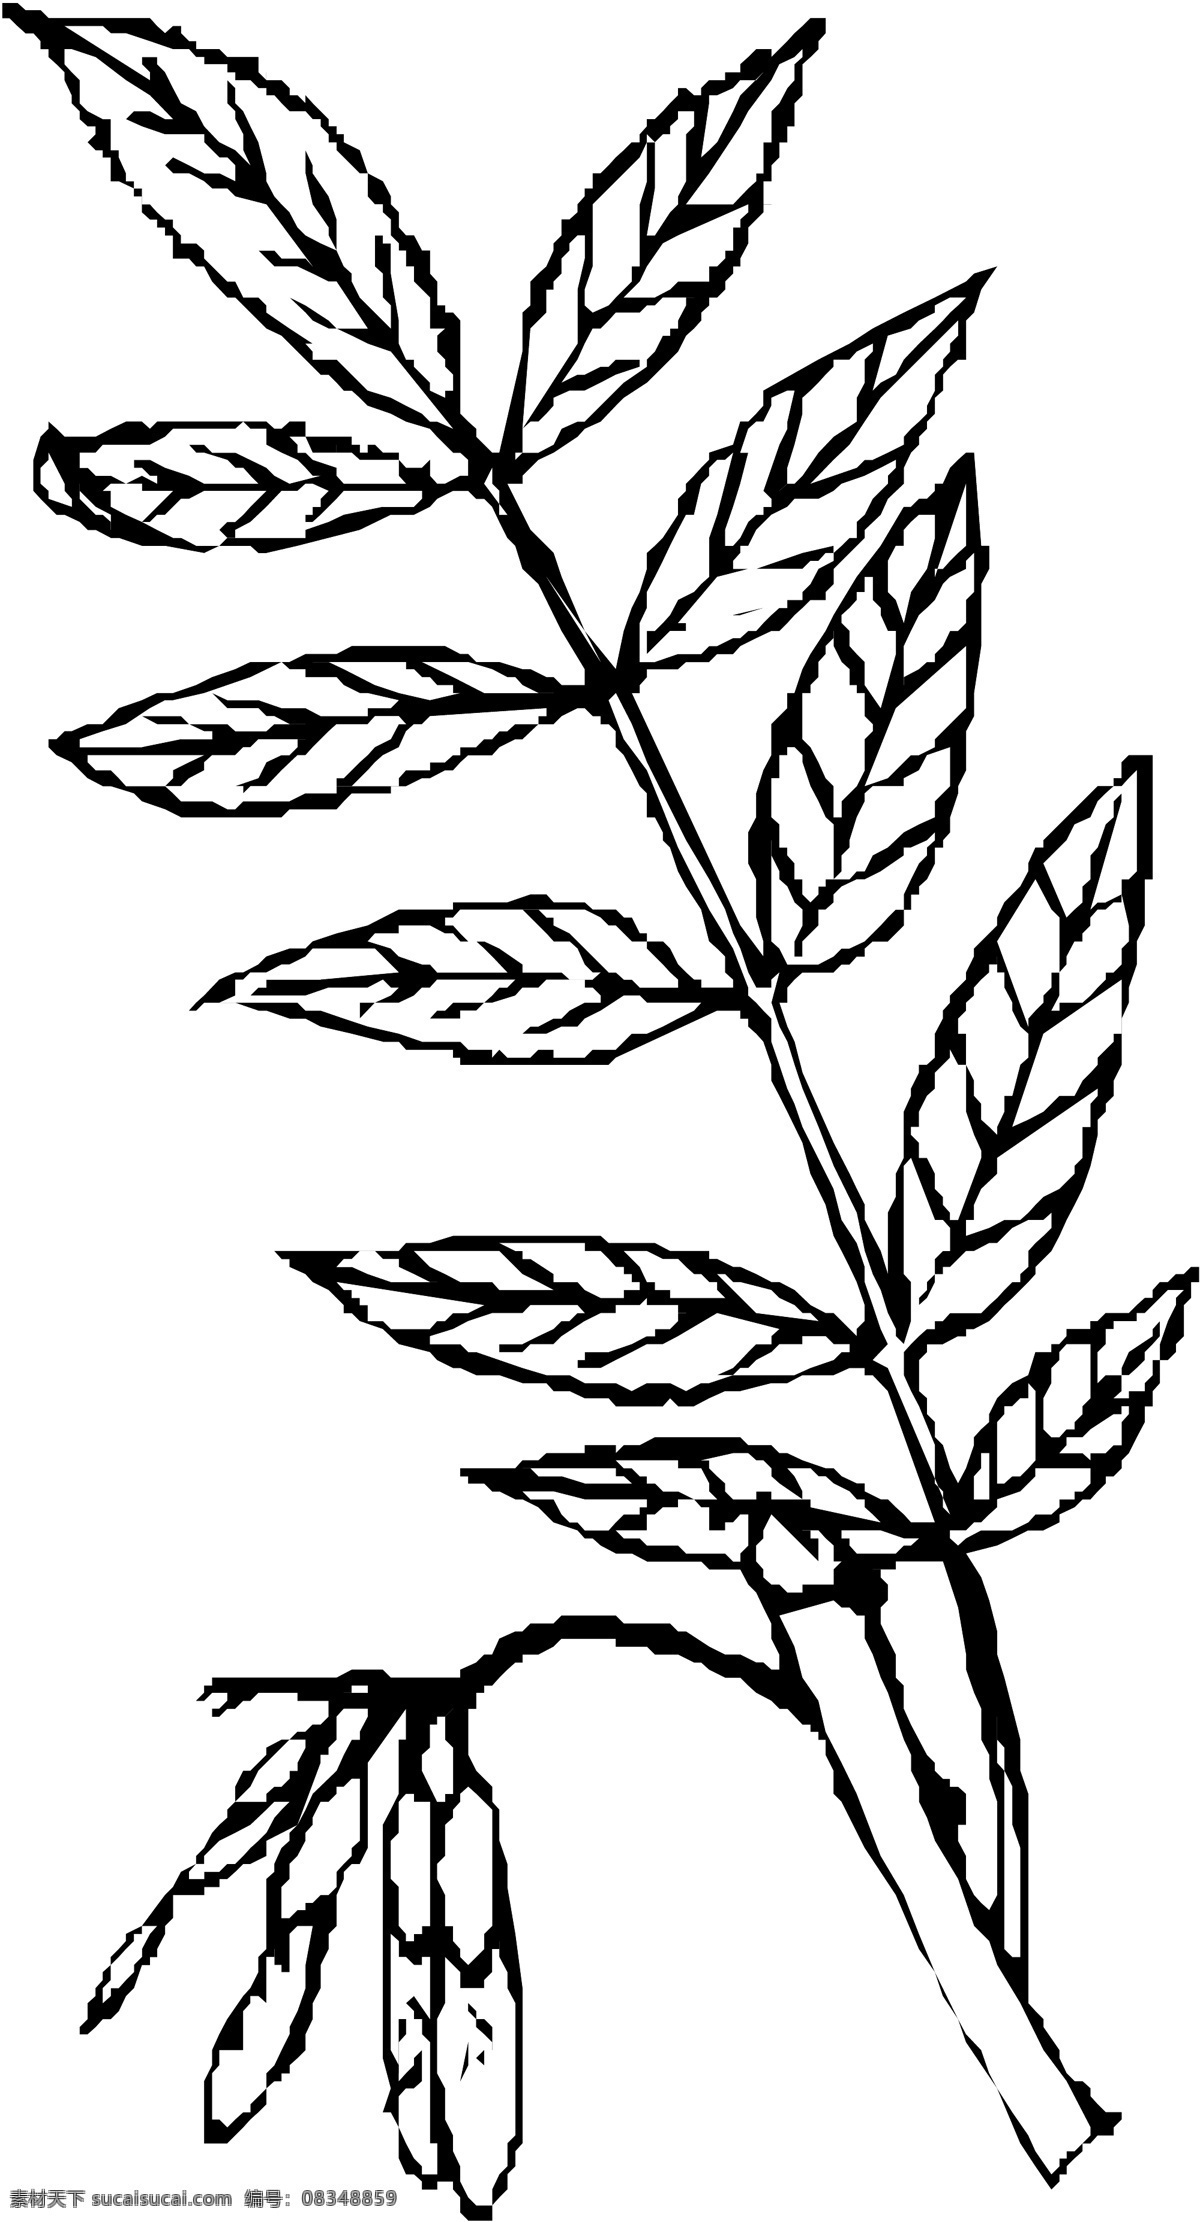 花草 矢量植物 矢量 eps0213 设计素材 叶的世界 矢量图库 白色